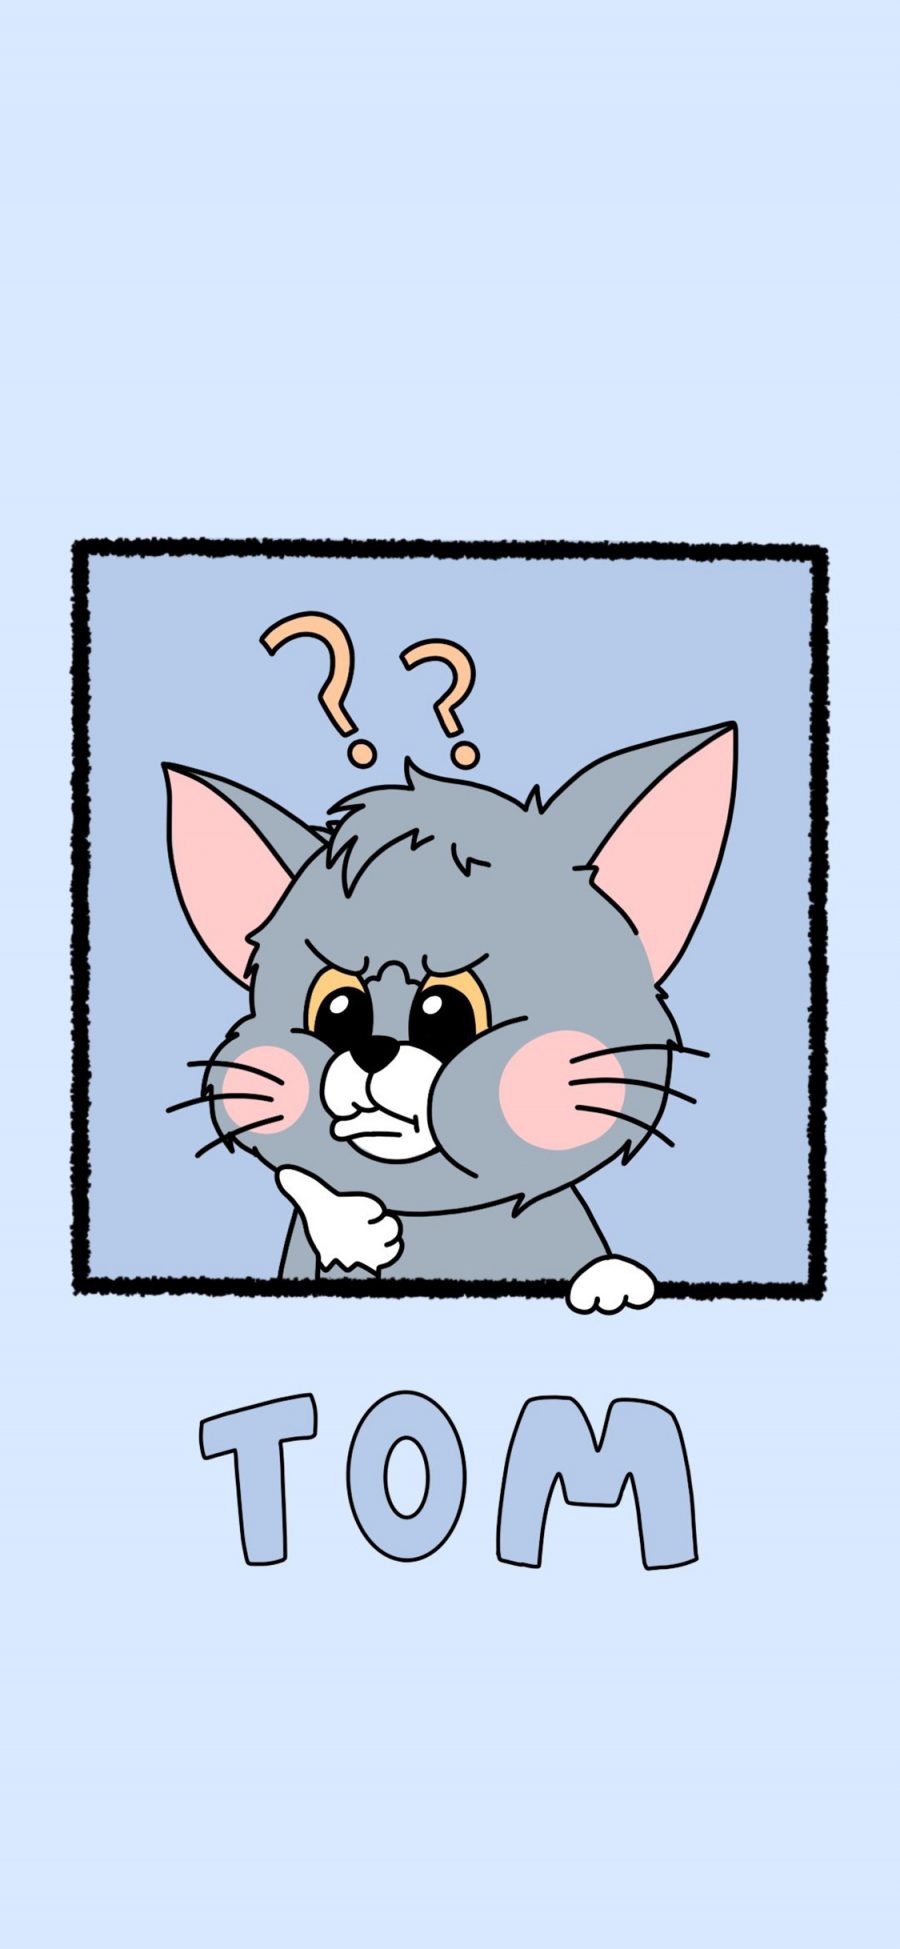 [2436×1125]汤姆猫 Tom 猫和老鼠 苹果手机动漫壁纸图片